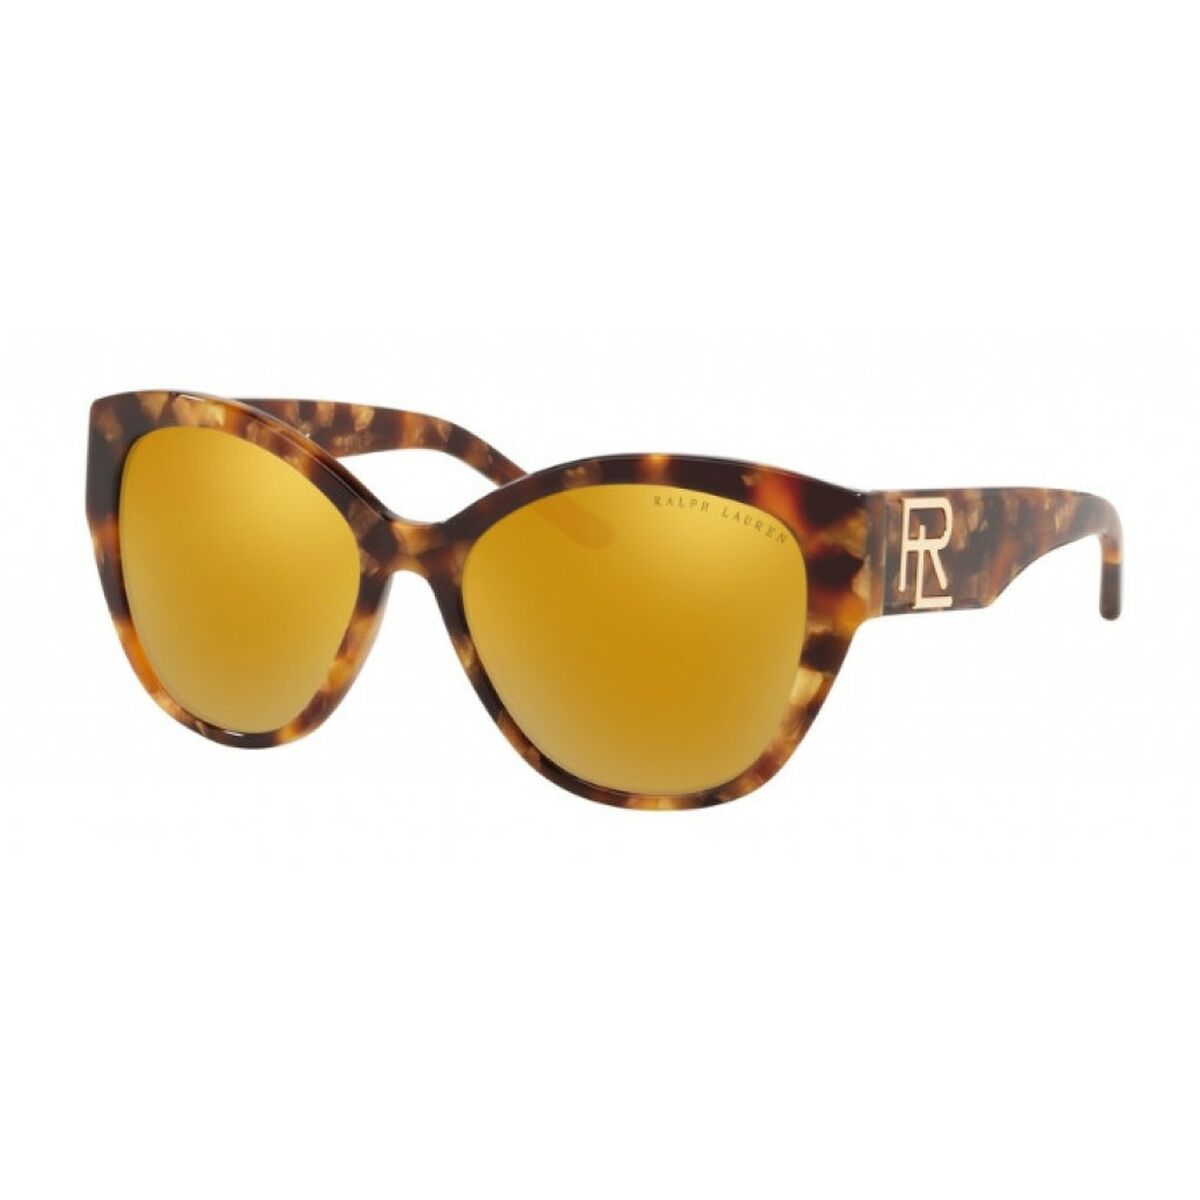 Kaufe Damensonnenbrille Ralph Lauren RL8168-56157P ø 50 mm bei AWK Flagship um € 105.00